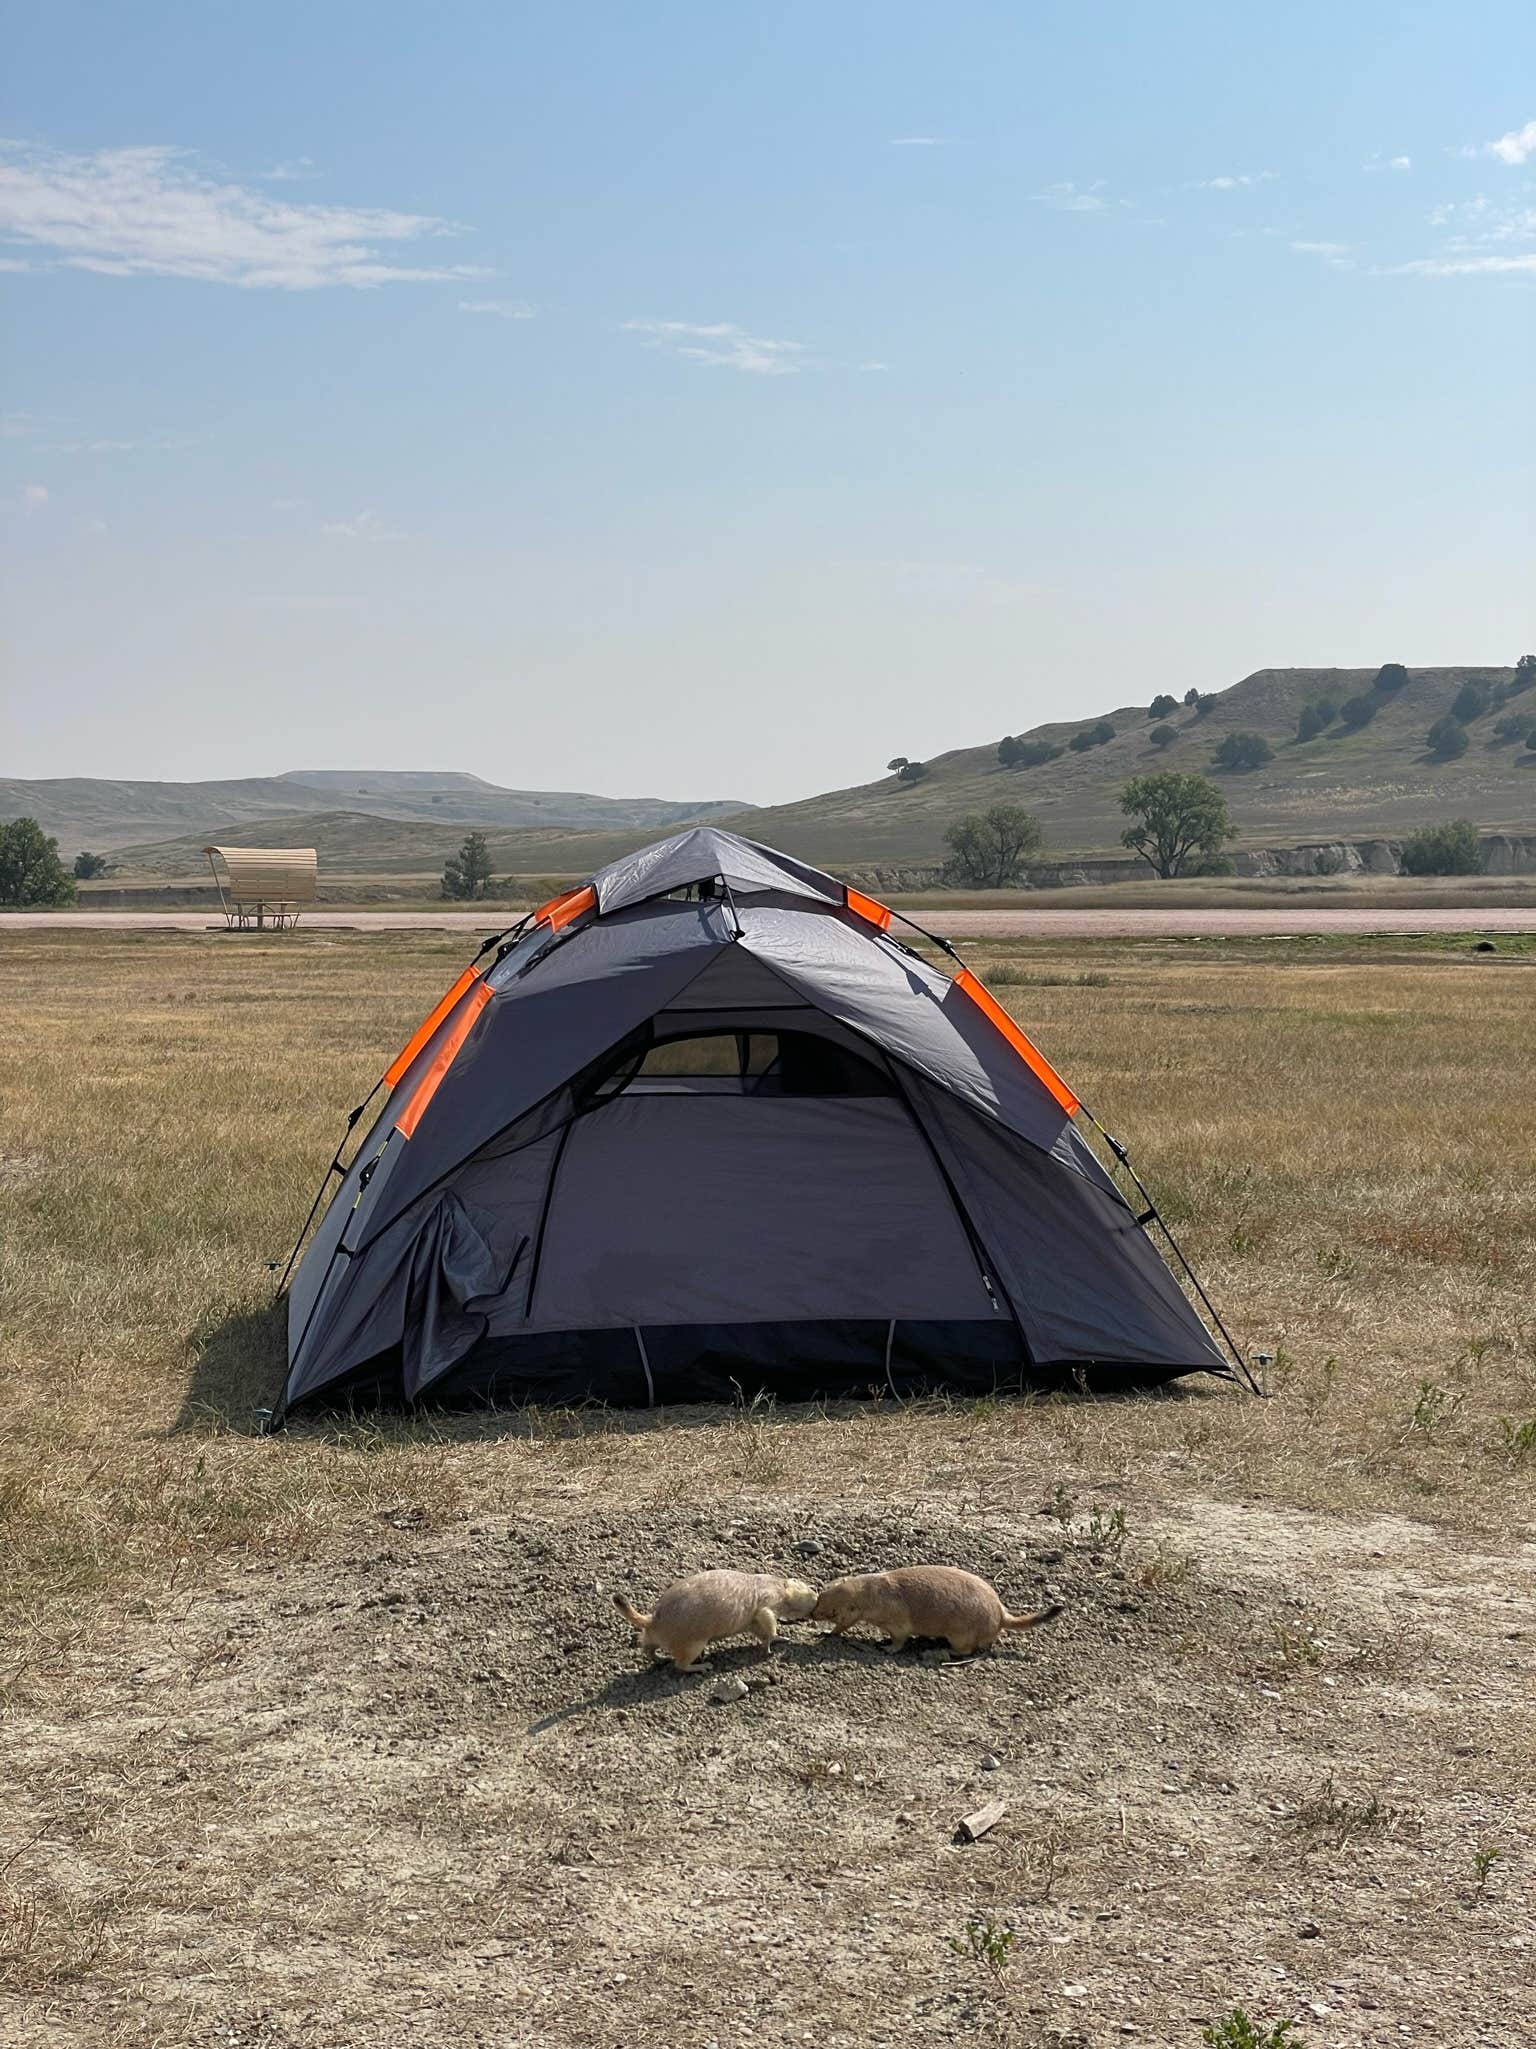 Tente De Camping Easy Up 3 MCKINLEY